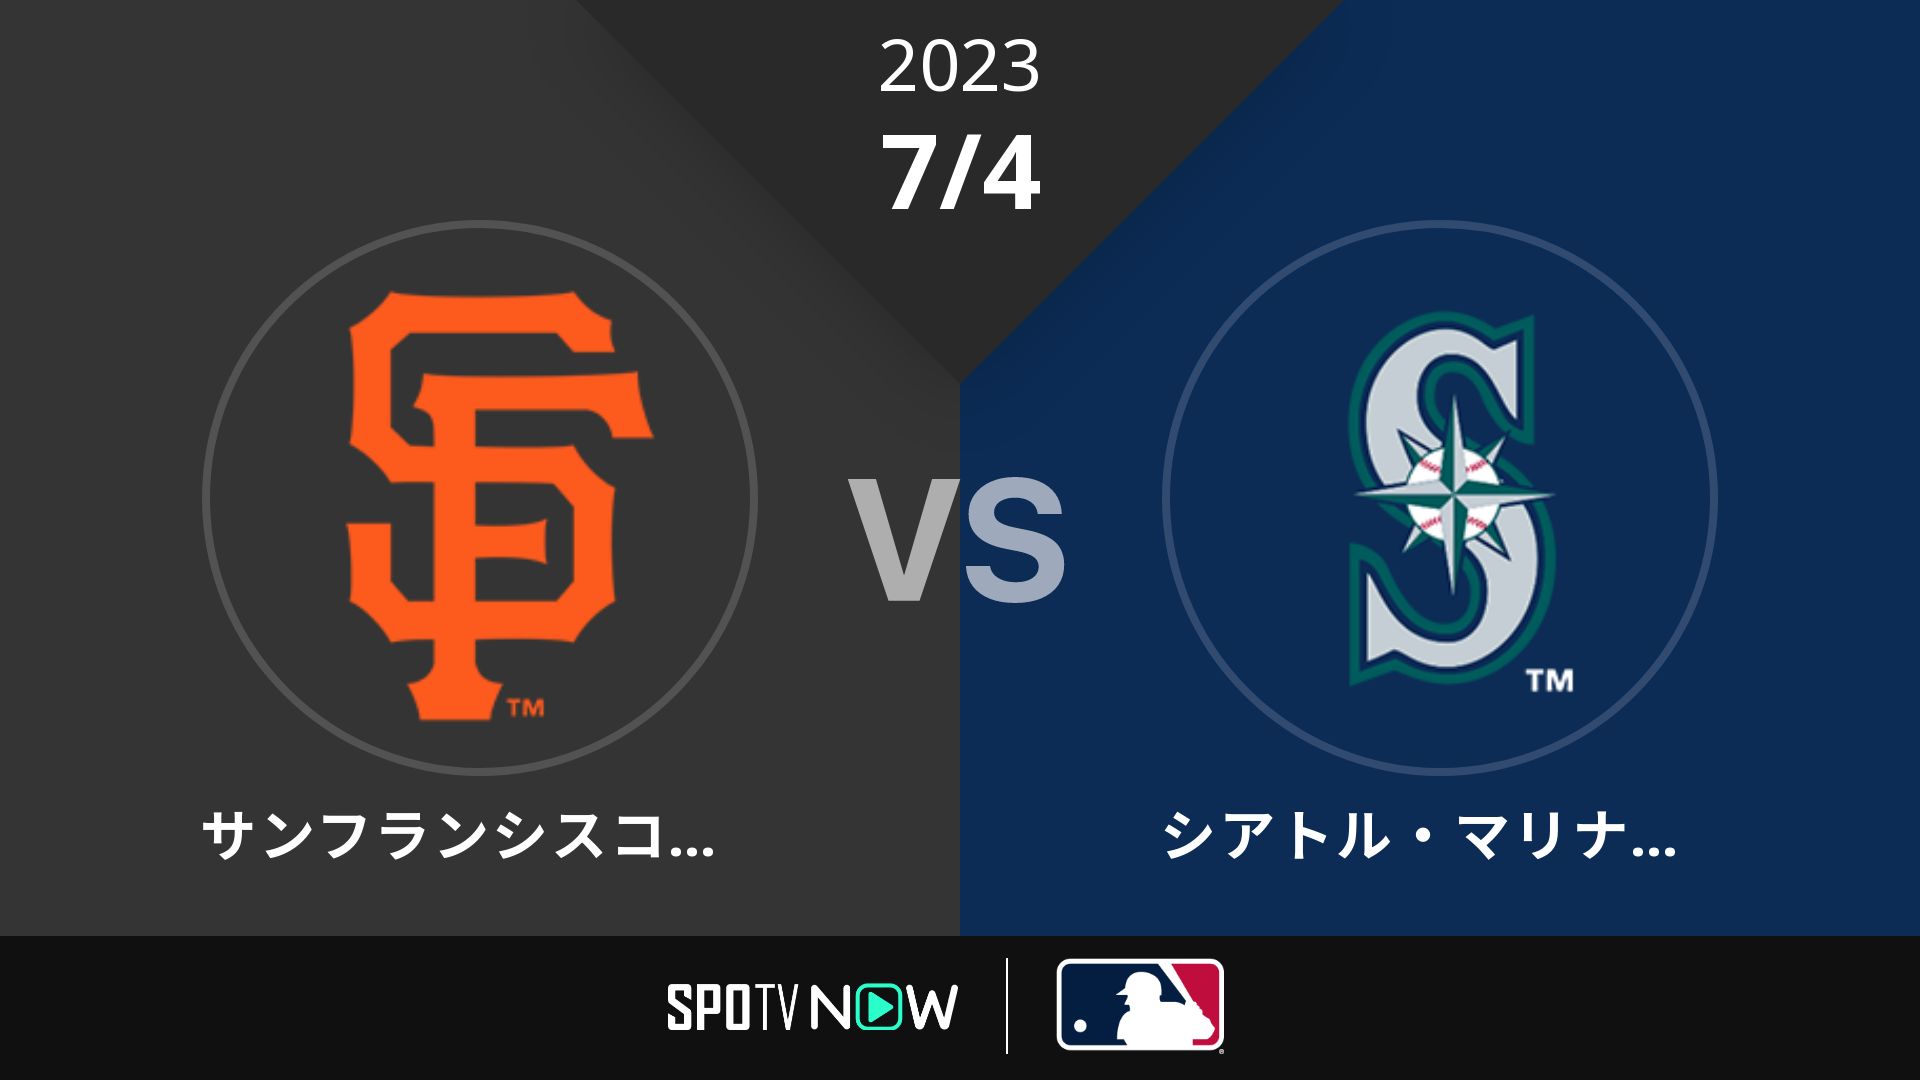 2023/7/4 ジャイアンツ vs マリナーズ [MLB]